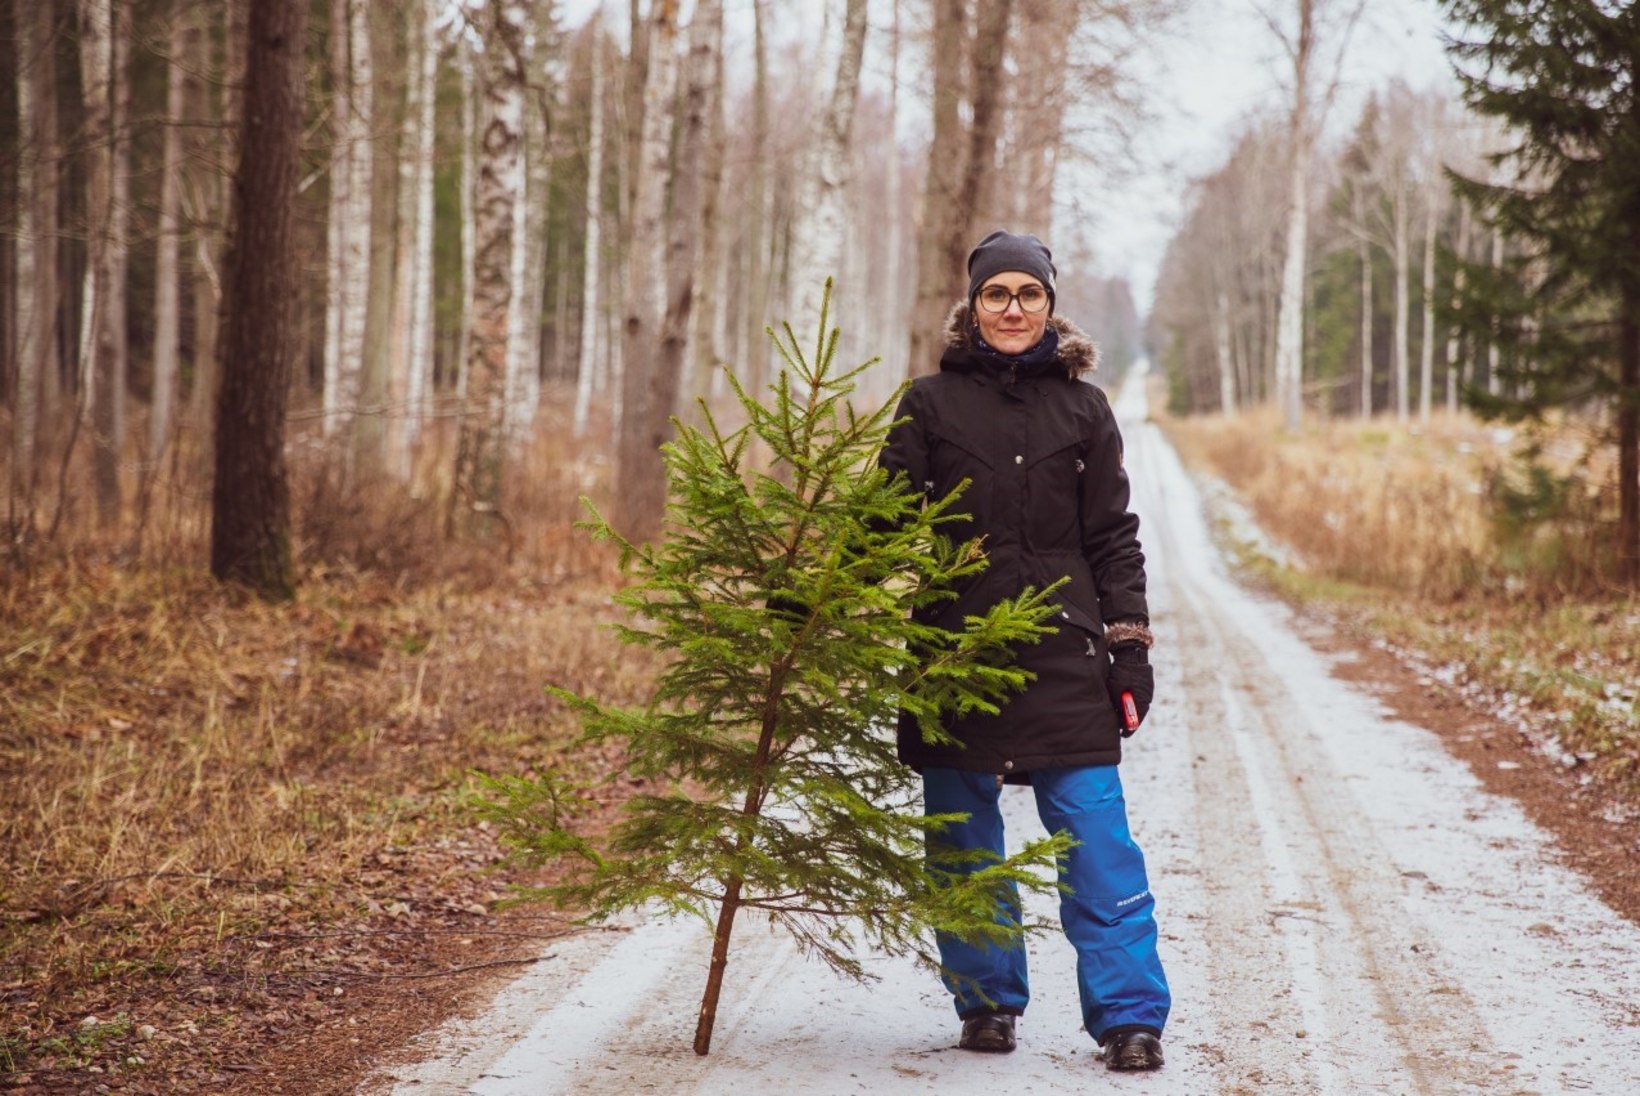 VIDEO | Jõulupuu koju ehk Kuidas RMK mobiilirakenduse abil metsast kuuske tuua?